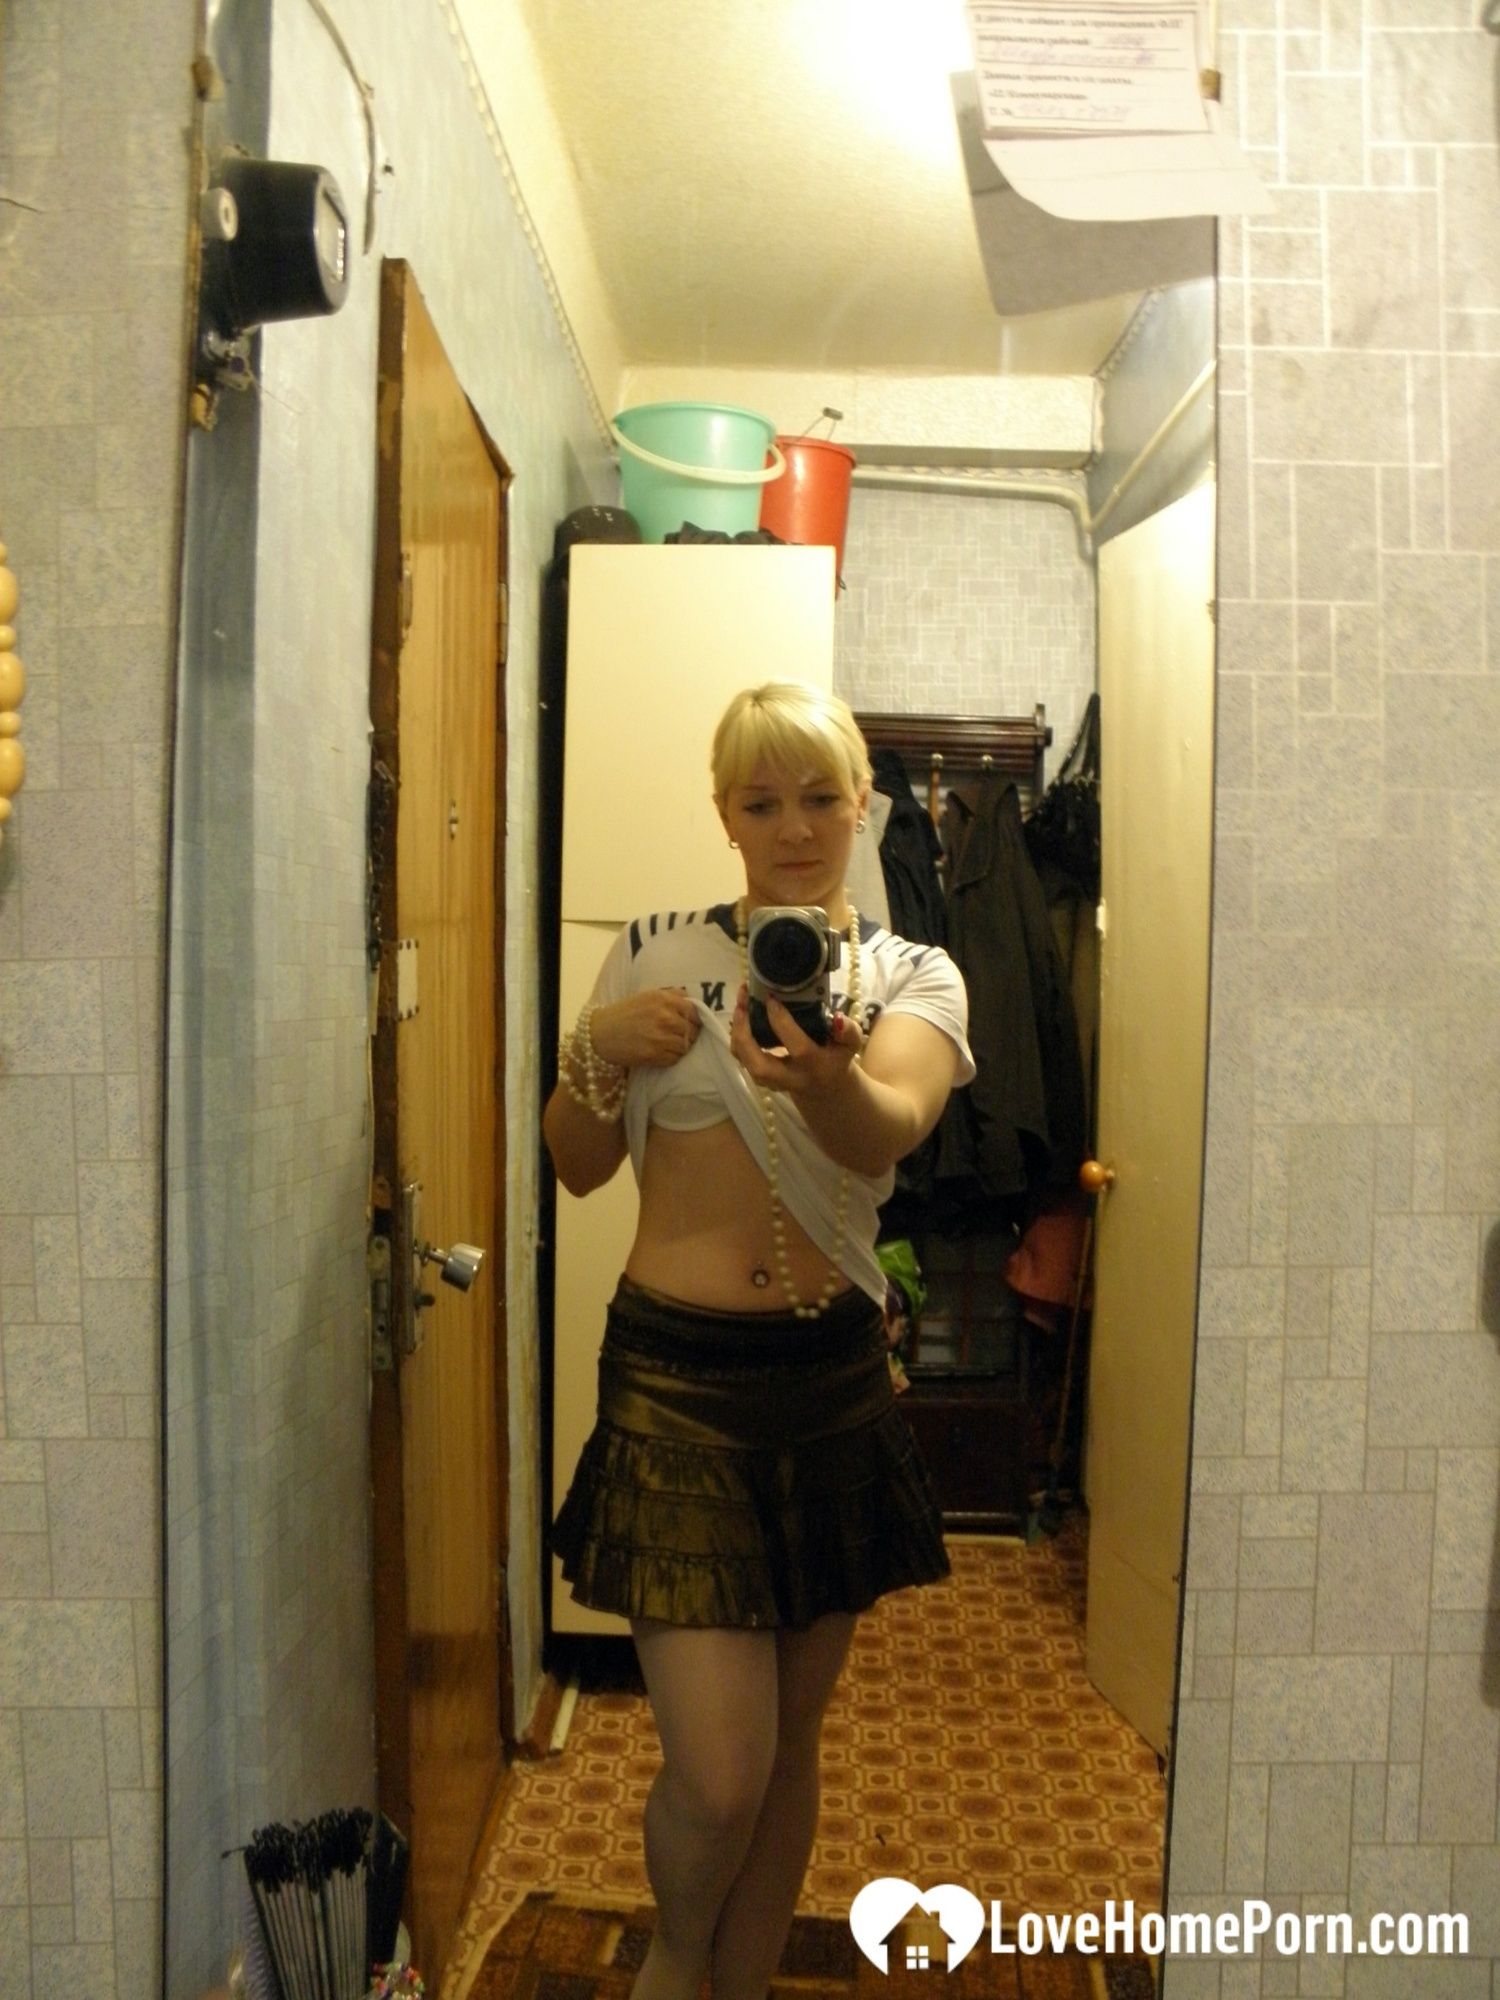 Aroused blonde in stockings taking naughty selfies #4